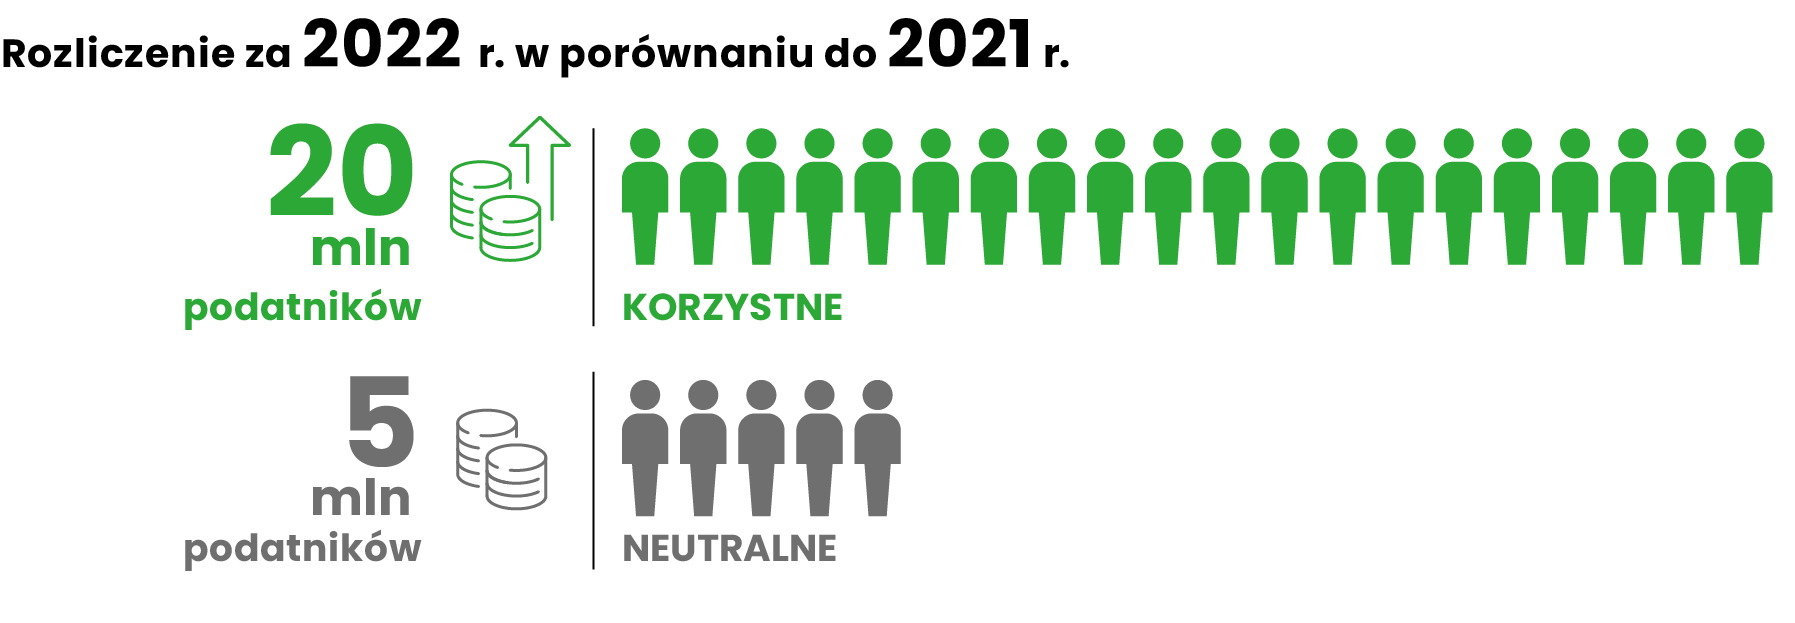 Rozliczenie za 2022 r. w porównaniu do 2021 r.